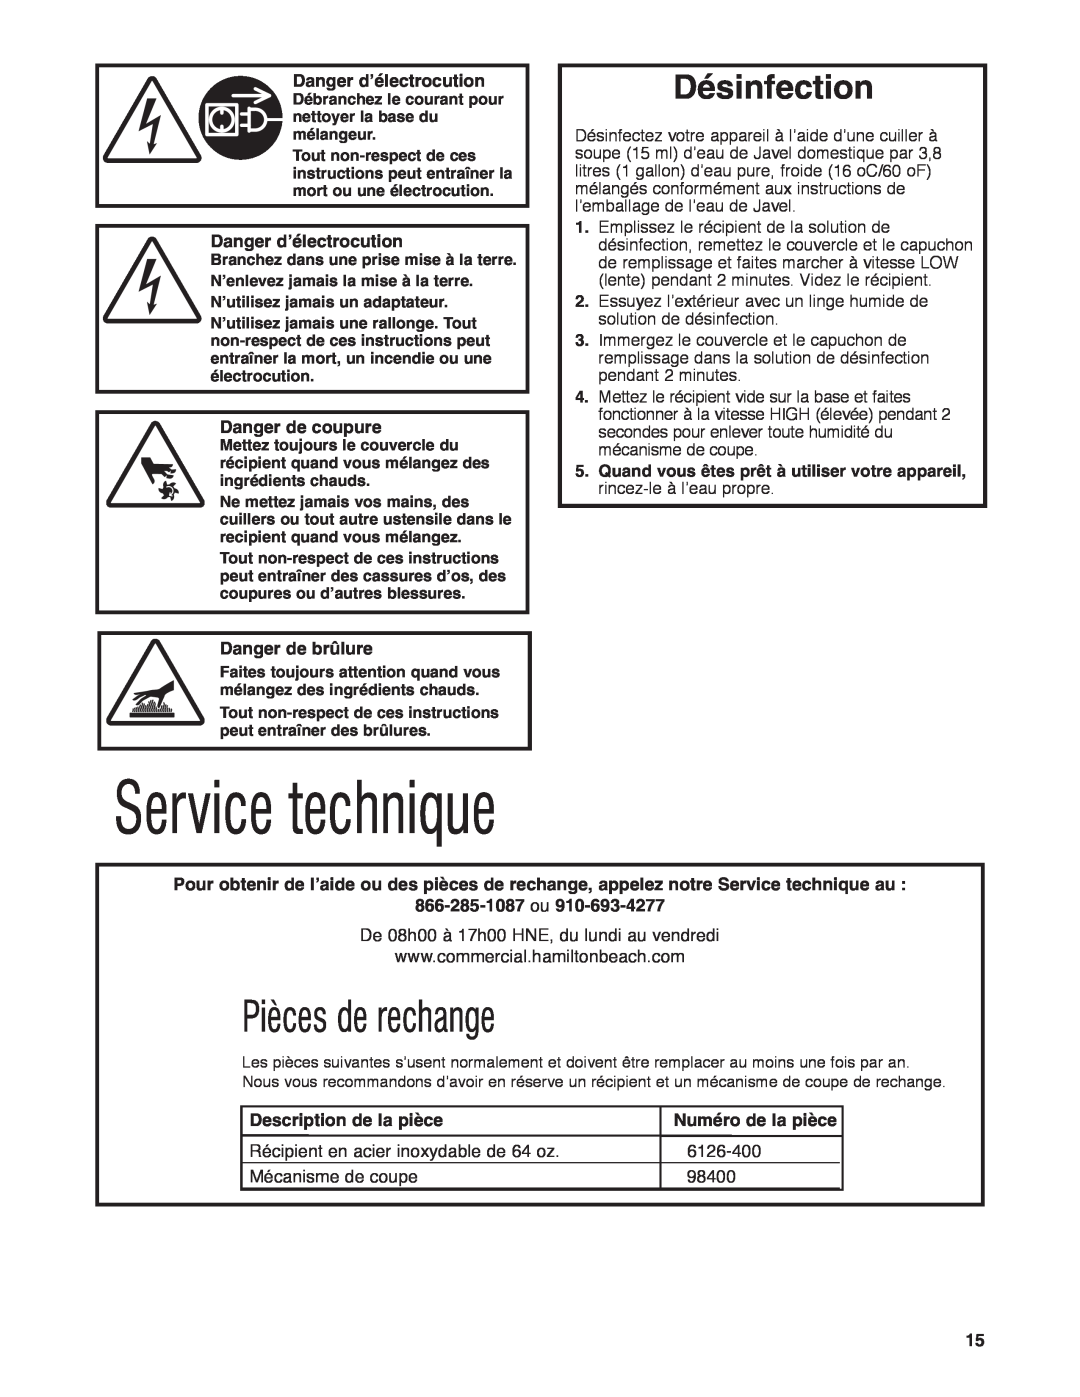 Hamilton Beach HBF400 Service technique, Pièces de rechange, Désinfection, Danger d’électrocution, Danger de coupure 